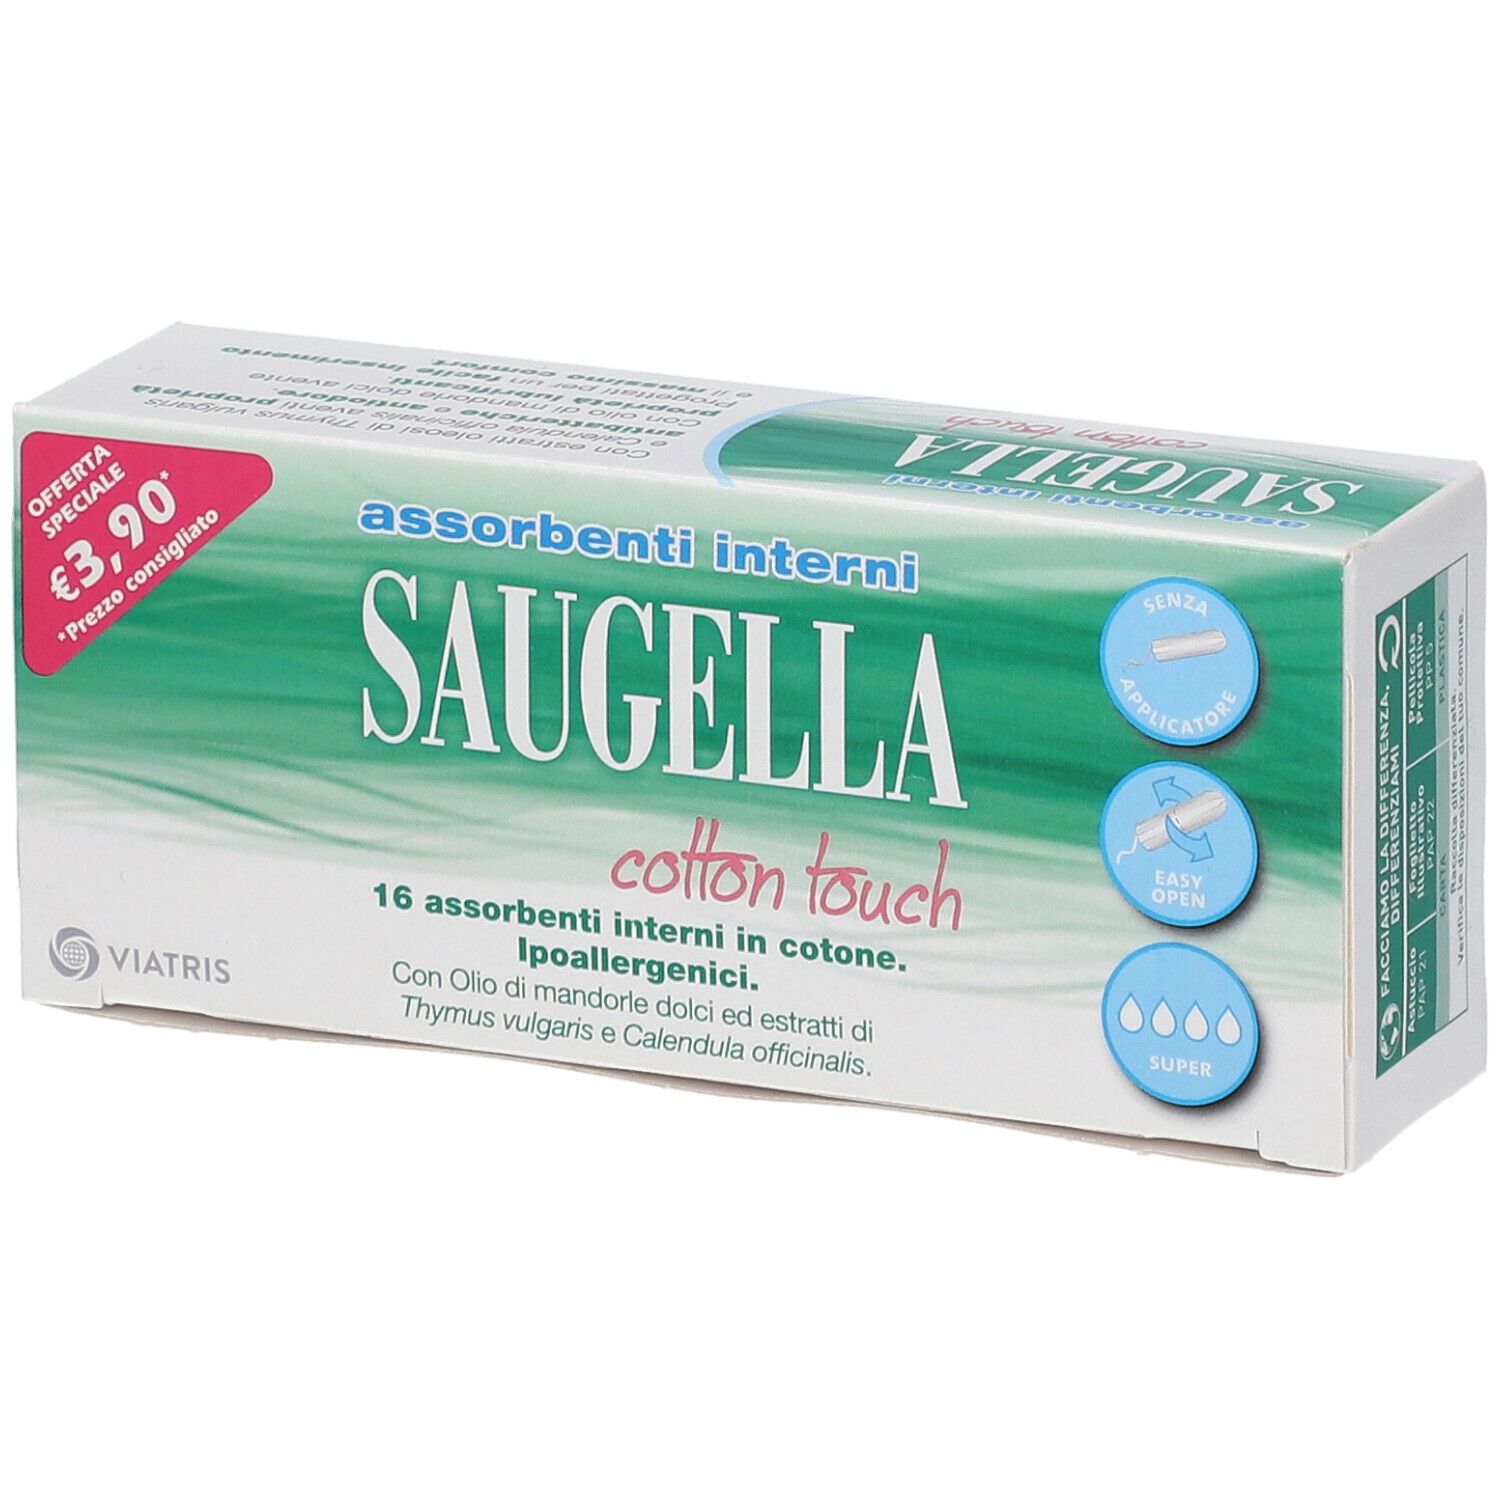 Saugella® Cotton Touch Super Assorbenti Interni